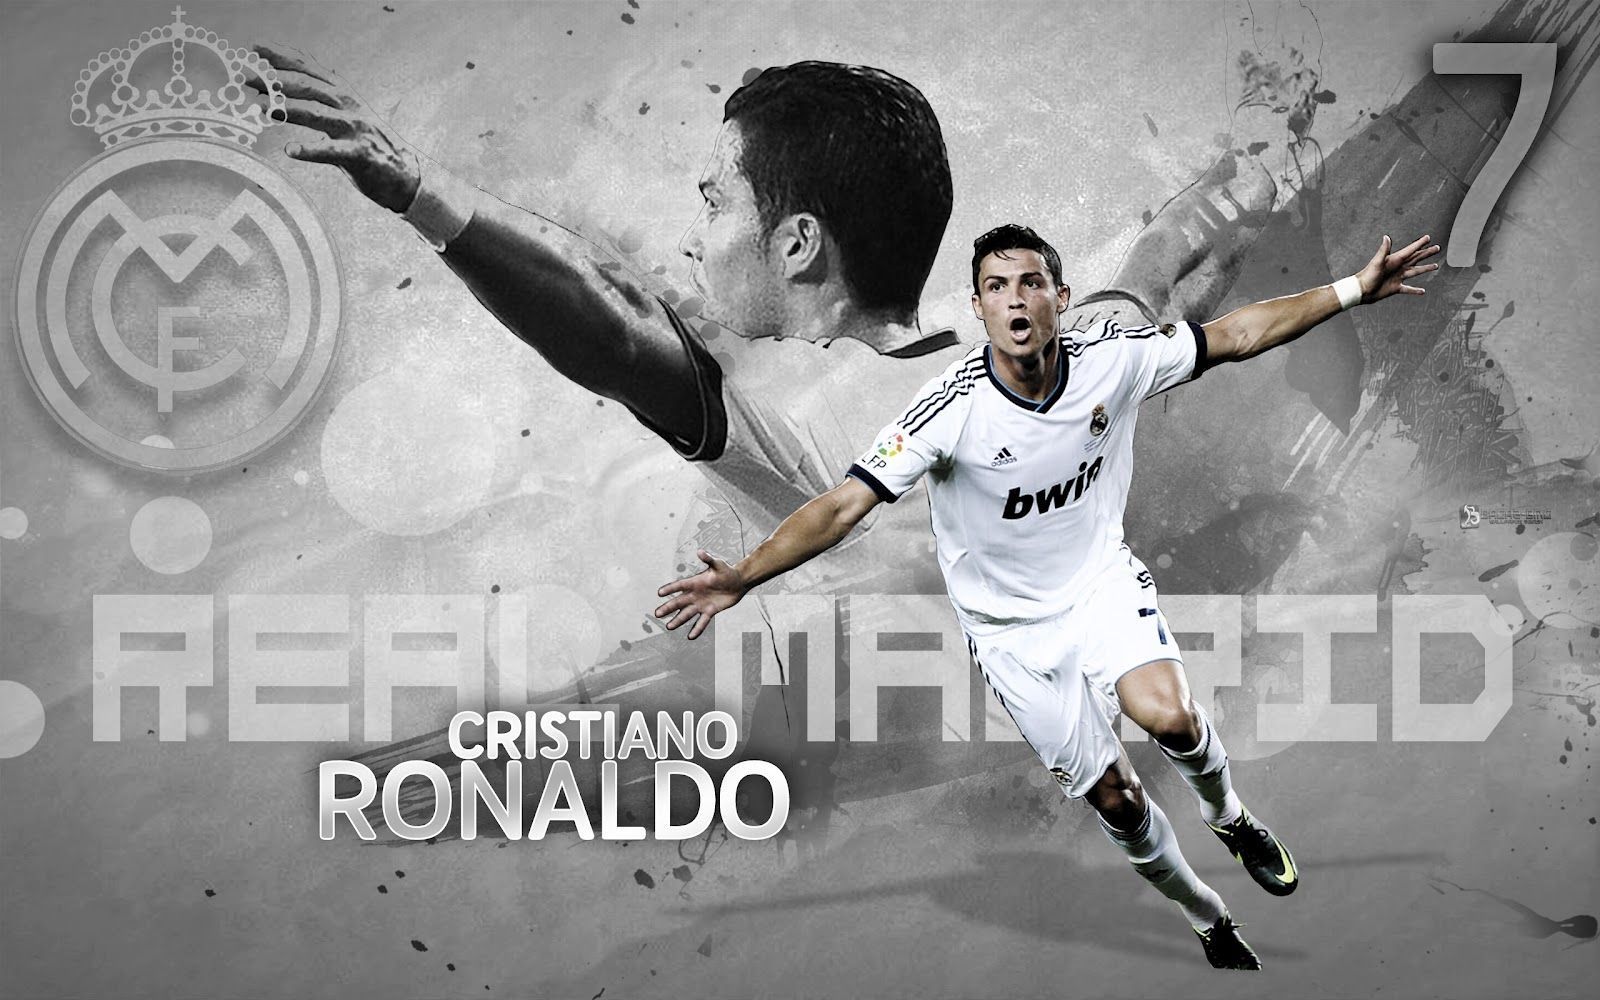 Wallpaper | Cristiano Ronaldo Fan | News, Photos, Blog, Pics, Videos